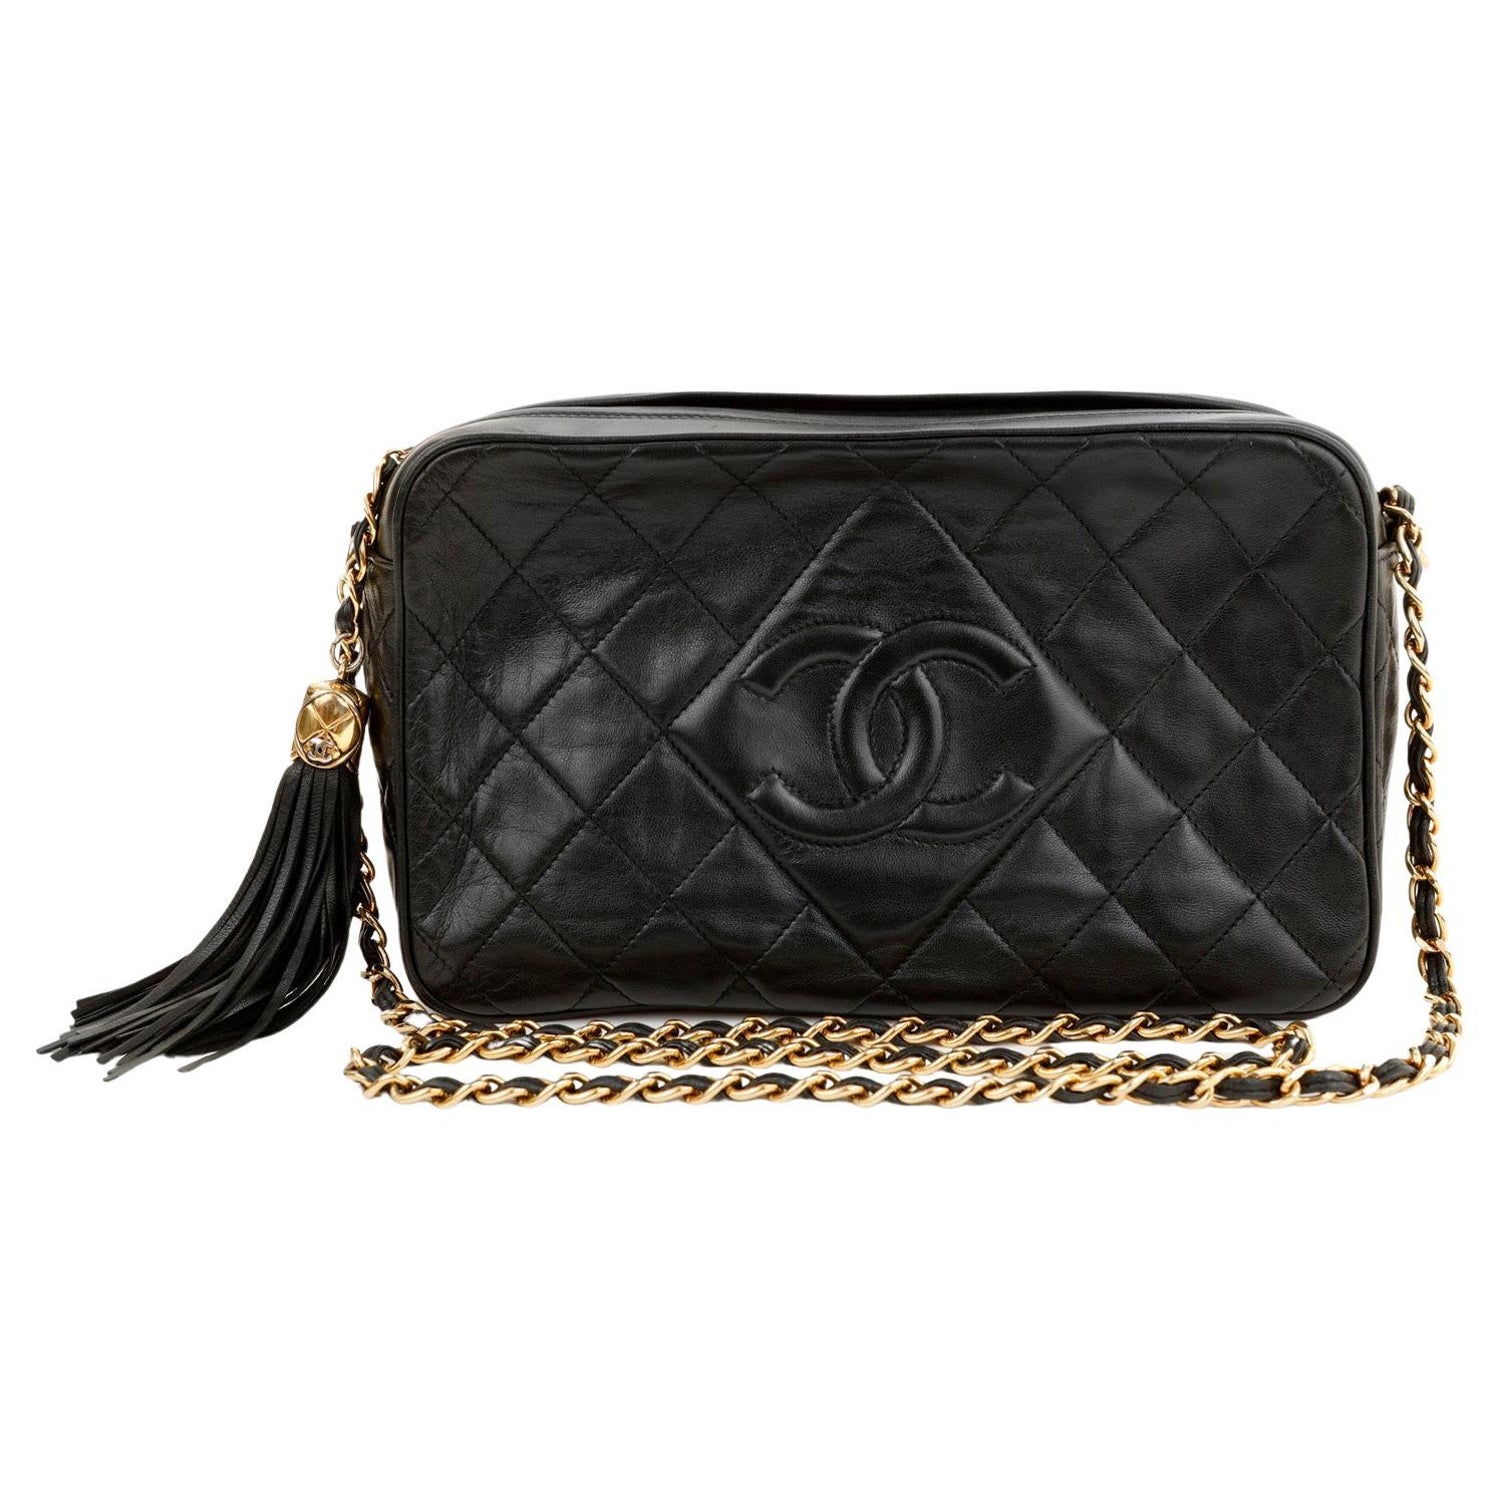 Chanel La Pausa Life Preserver Bag